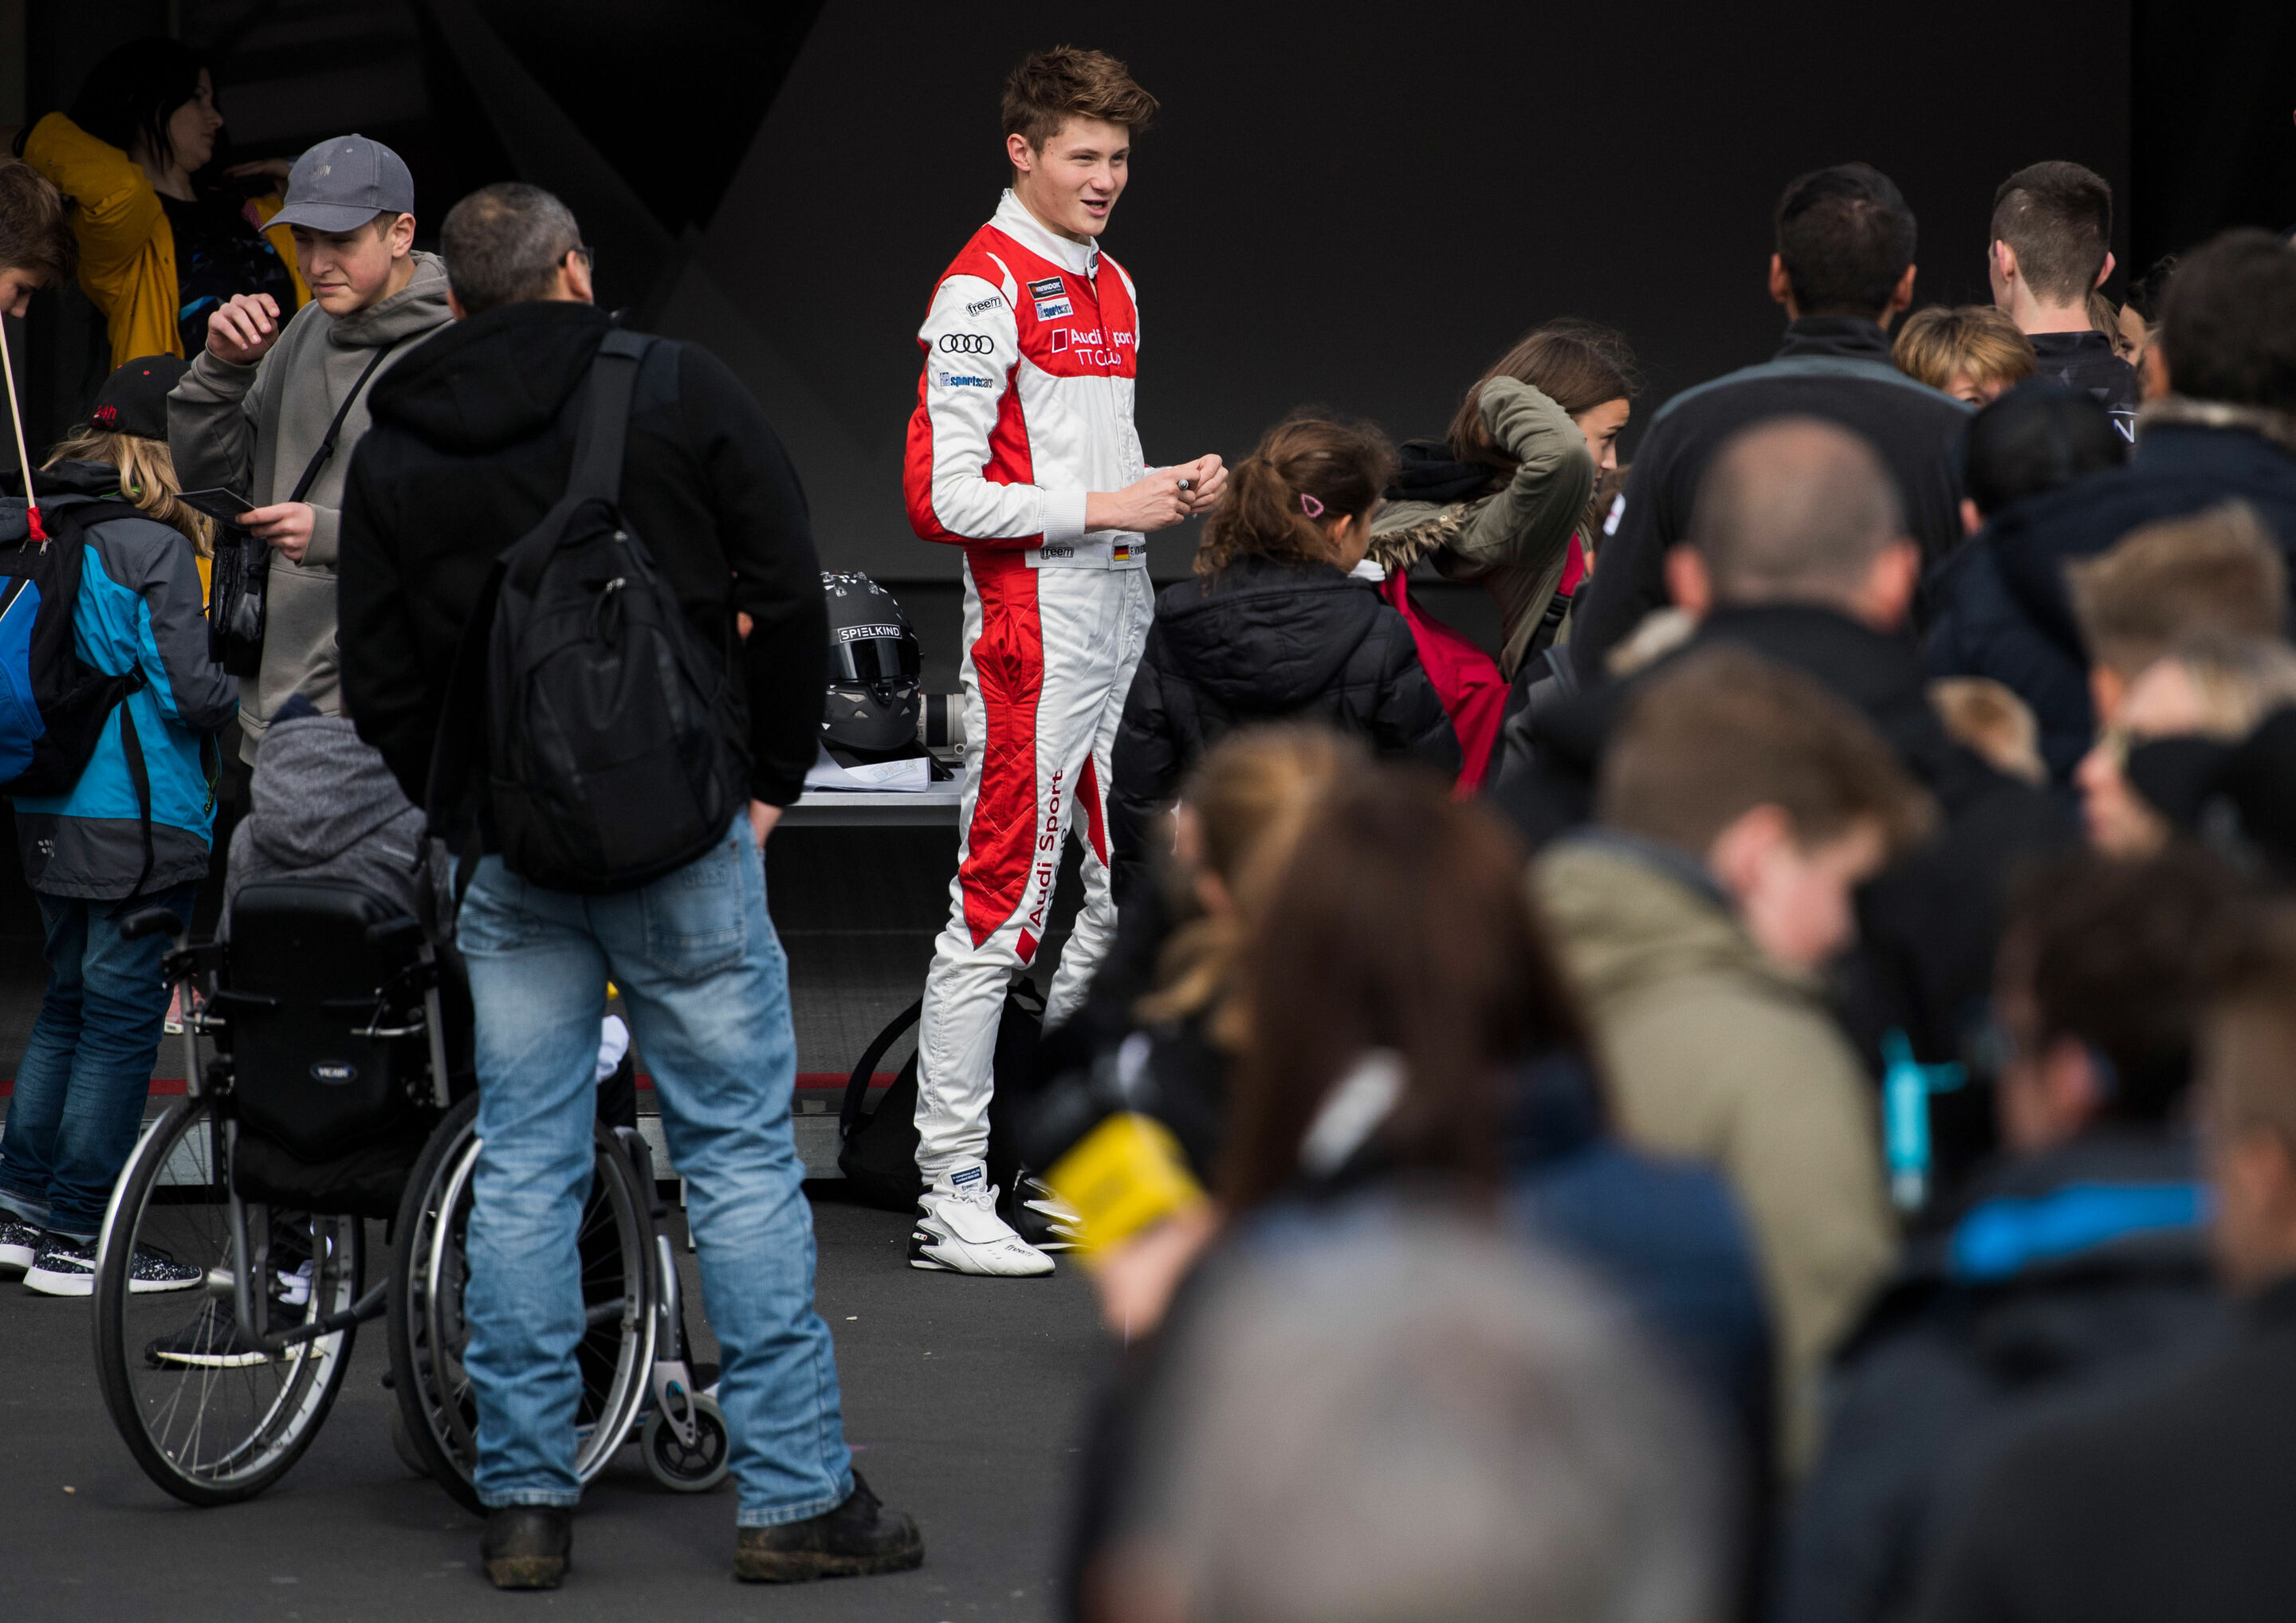 Audi Sport TT Cup Nürburgring 2017